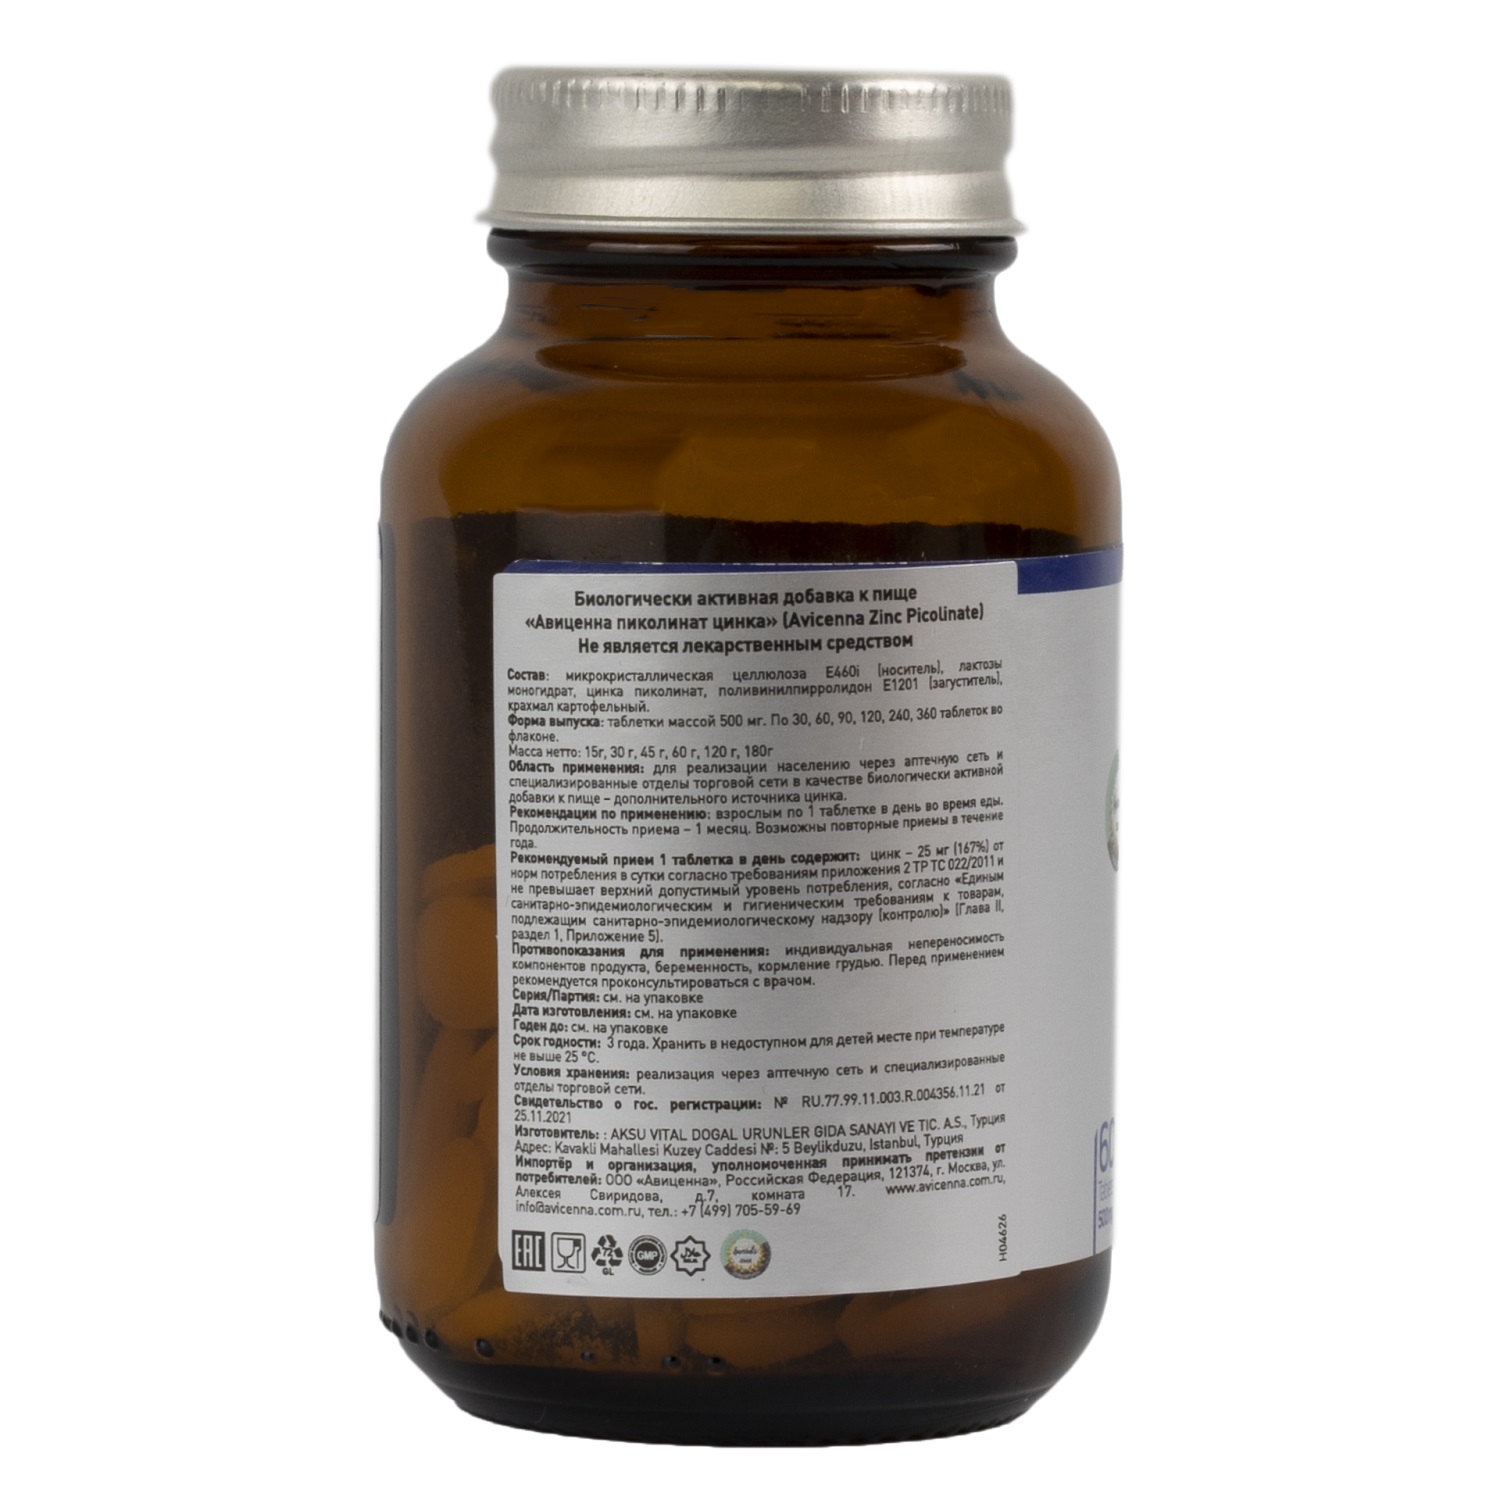 Avicenna Пиколинат цинка 25 мг, 60 таблеток. фото